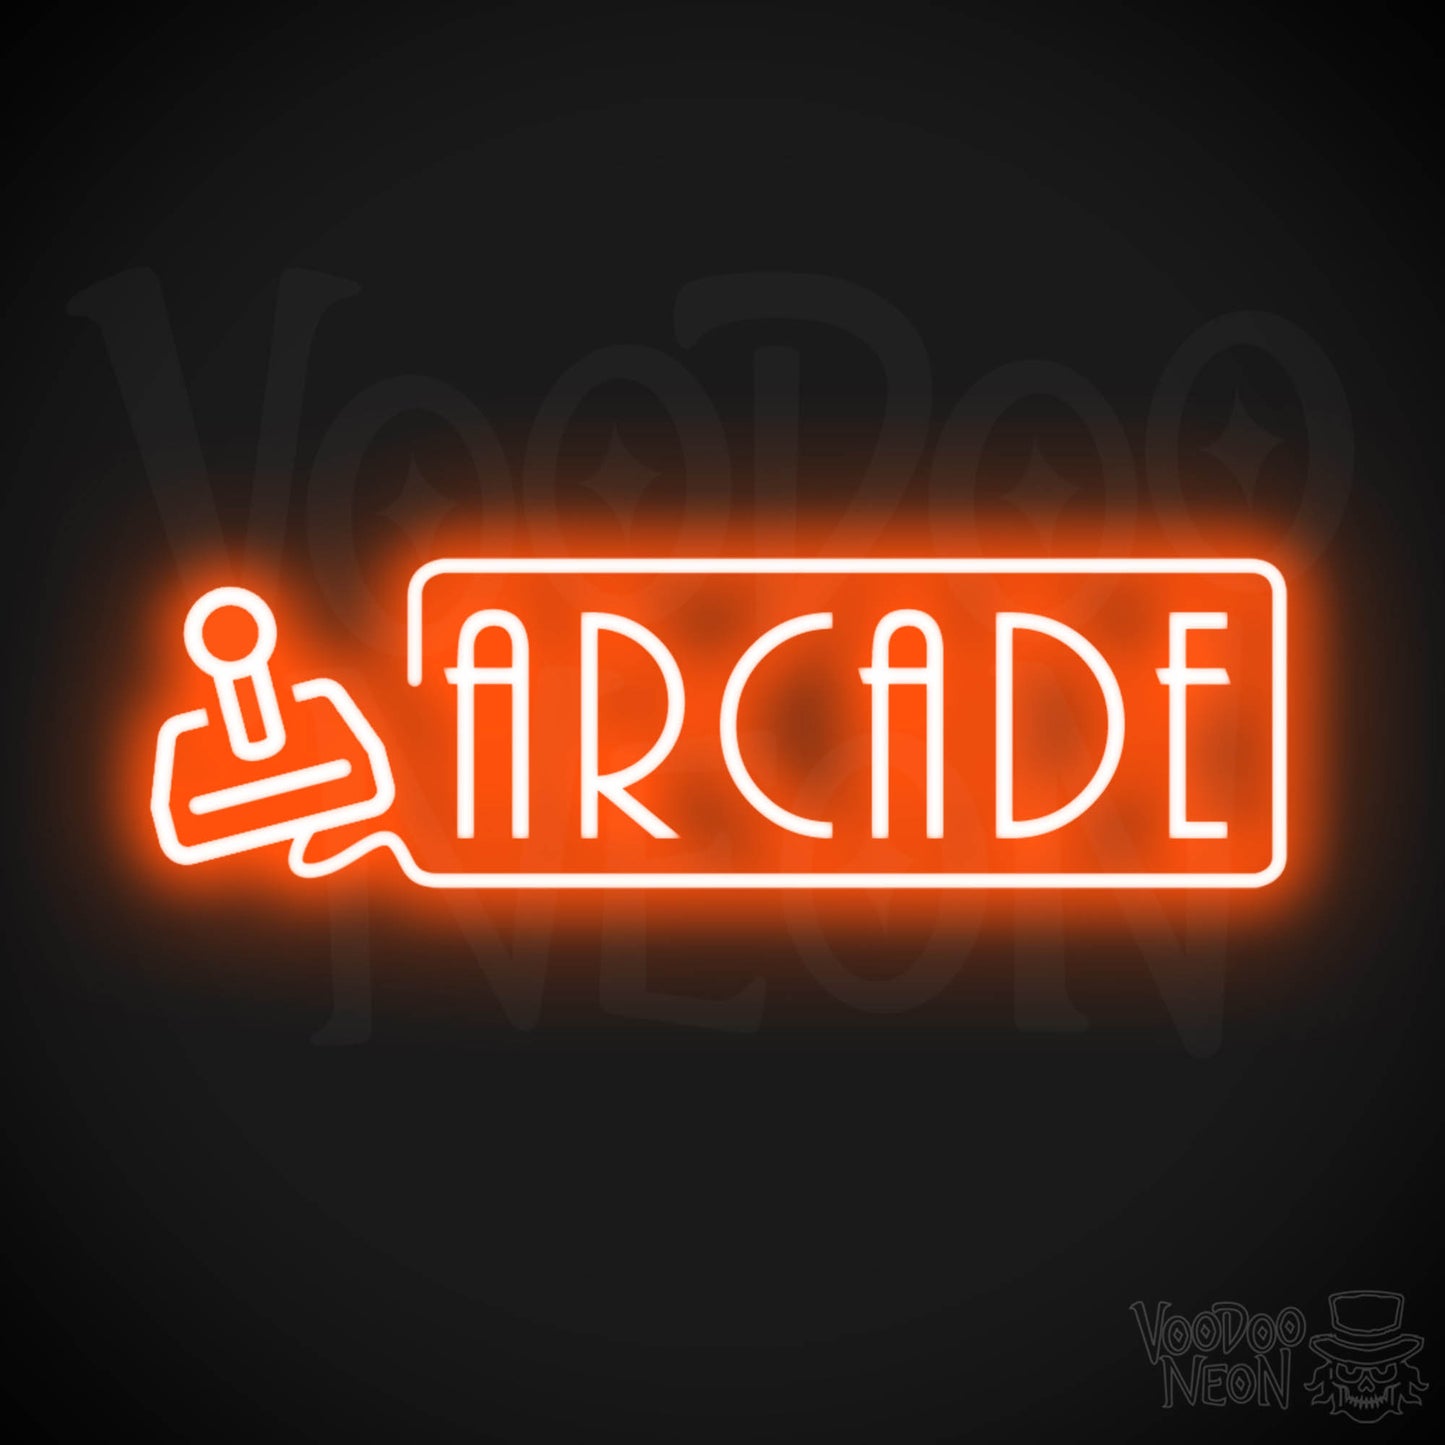 Arcade Neon Sign - Neon Arcade Sign - Neon Wall Art - Color Orange